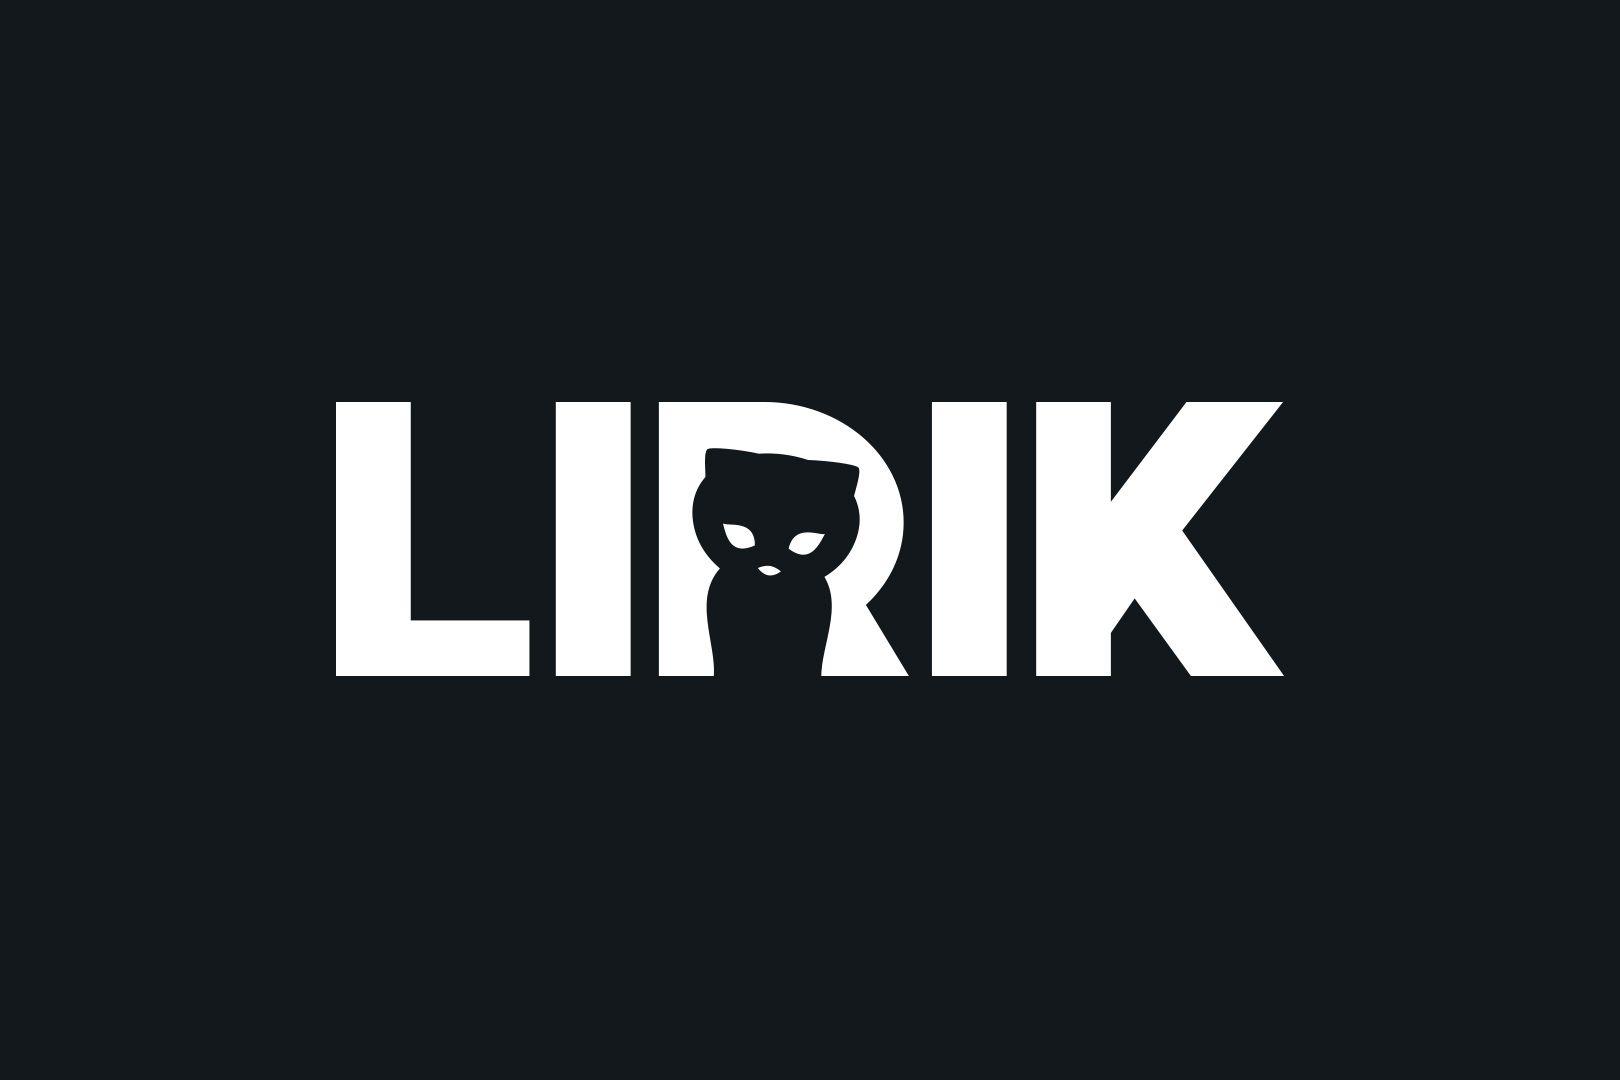 He Logo - LIRIK